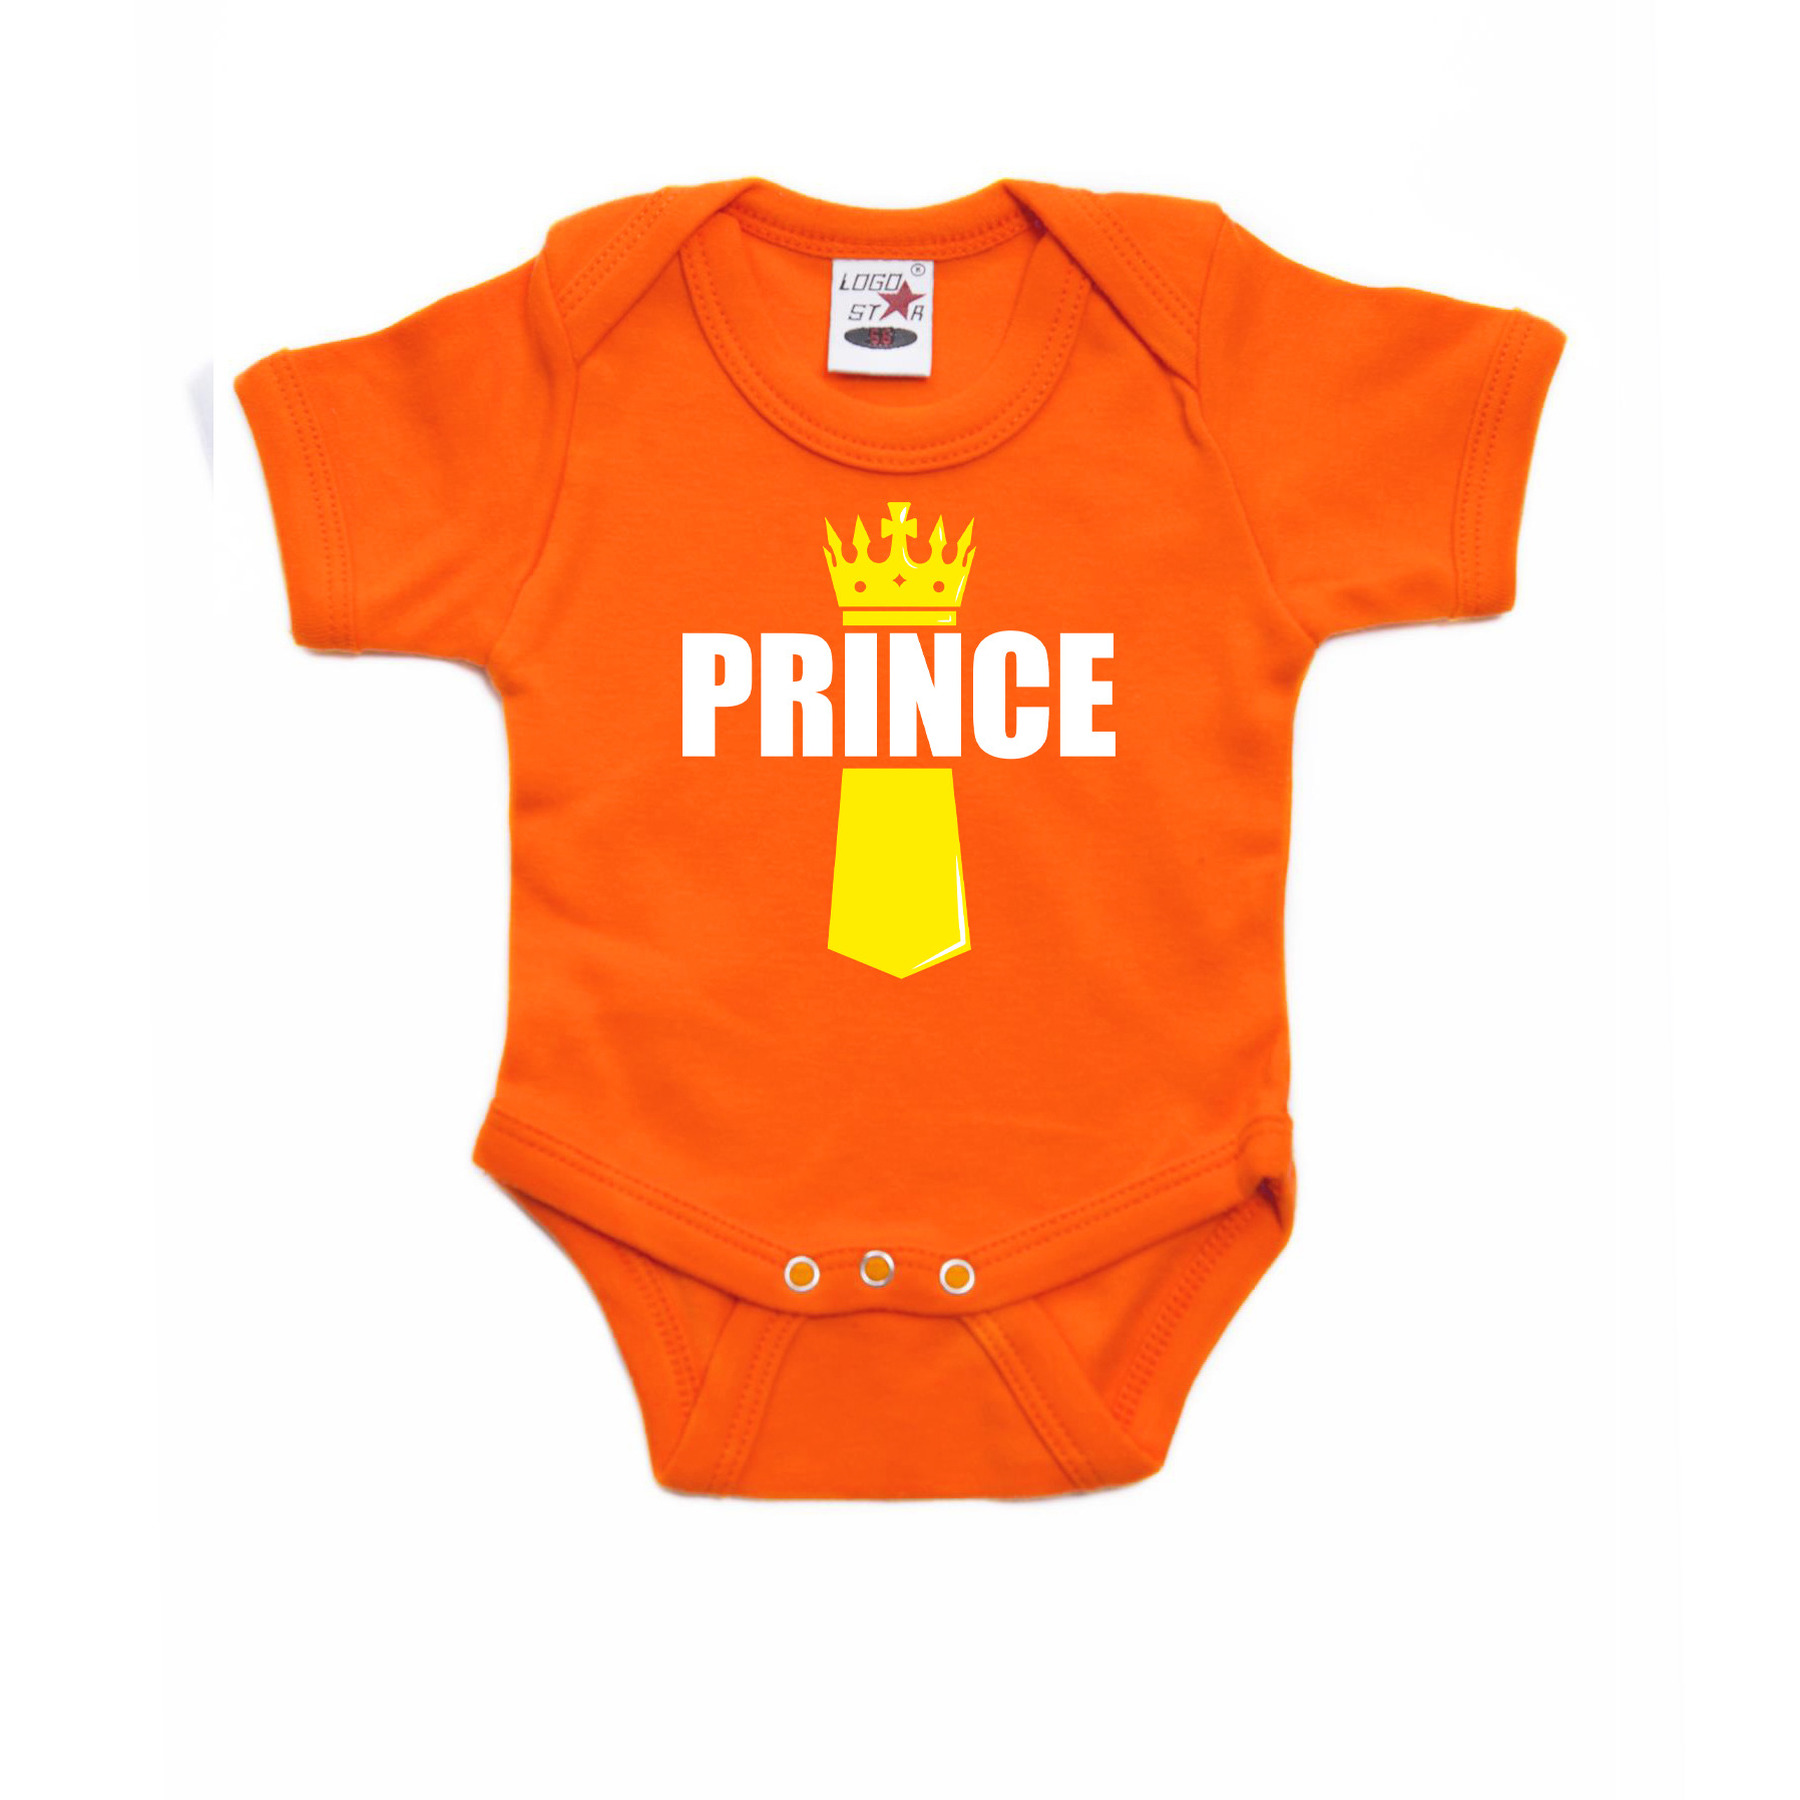 Koningsdag romper Prince met kroontje oranje voor babys